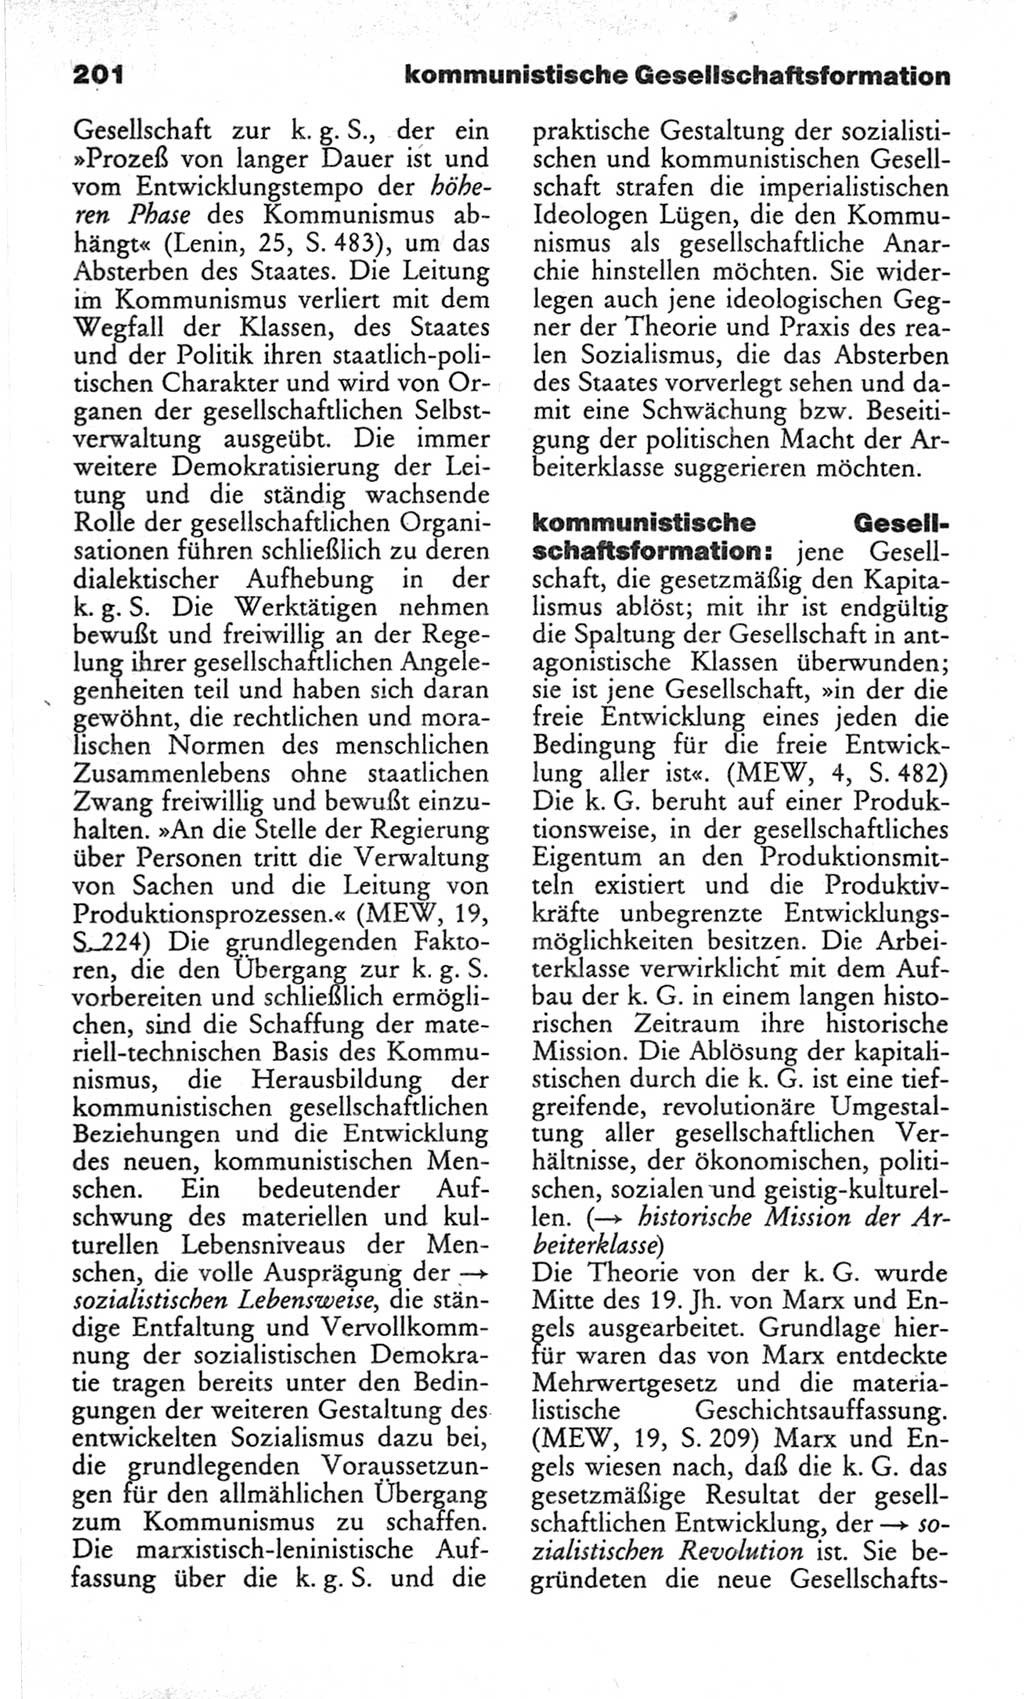 Wörterbuch des wissenschaftlichen Kommunismus [Deutsche Demokratische Republik (DDR)] 1982, Seite 201 (Wb. wiss. Komm. DDR 1982, S. 201)